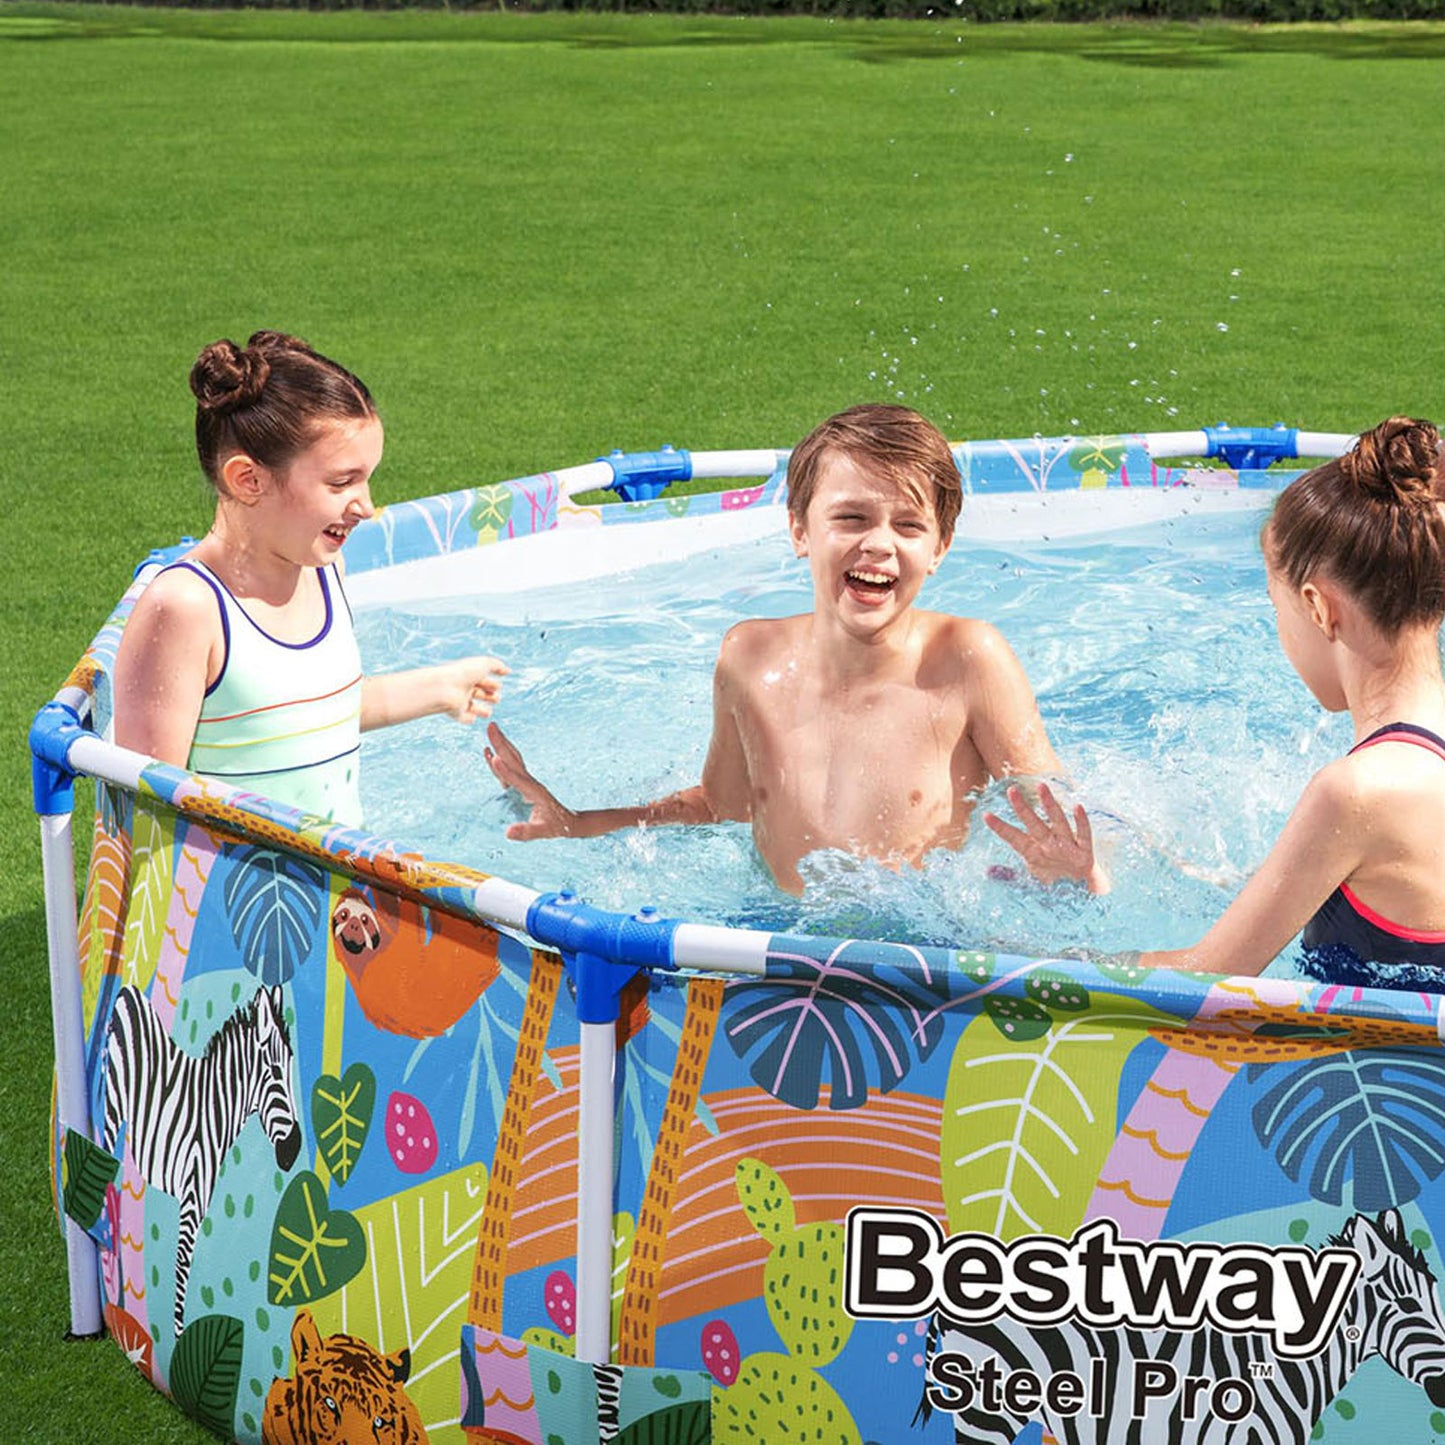 Bestway Steel Pro™ Round Above Ground Swimming Pool - 3.05m x 66cm